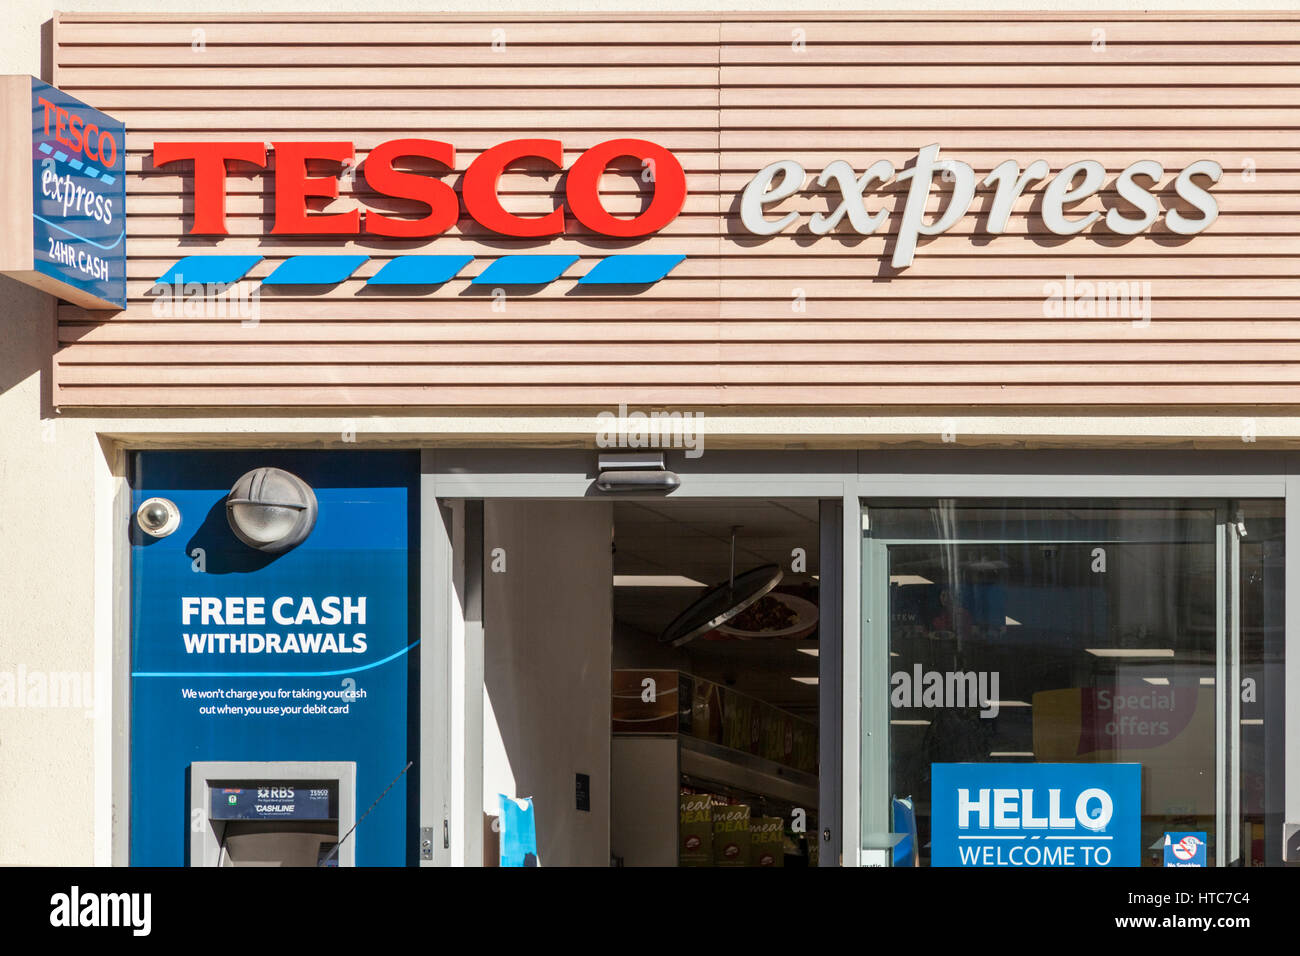 Tesco Express store, Nottingham, England, UK Stock Photo